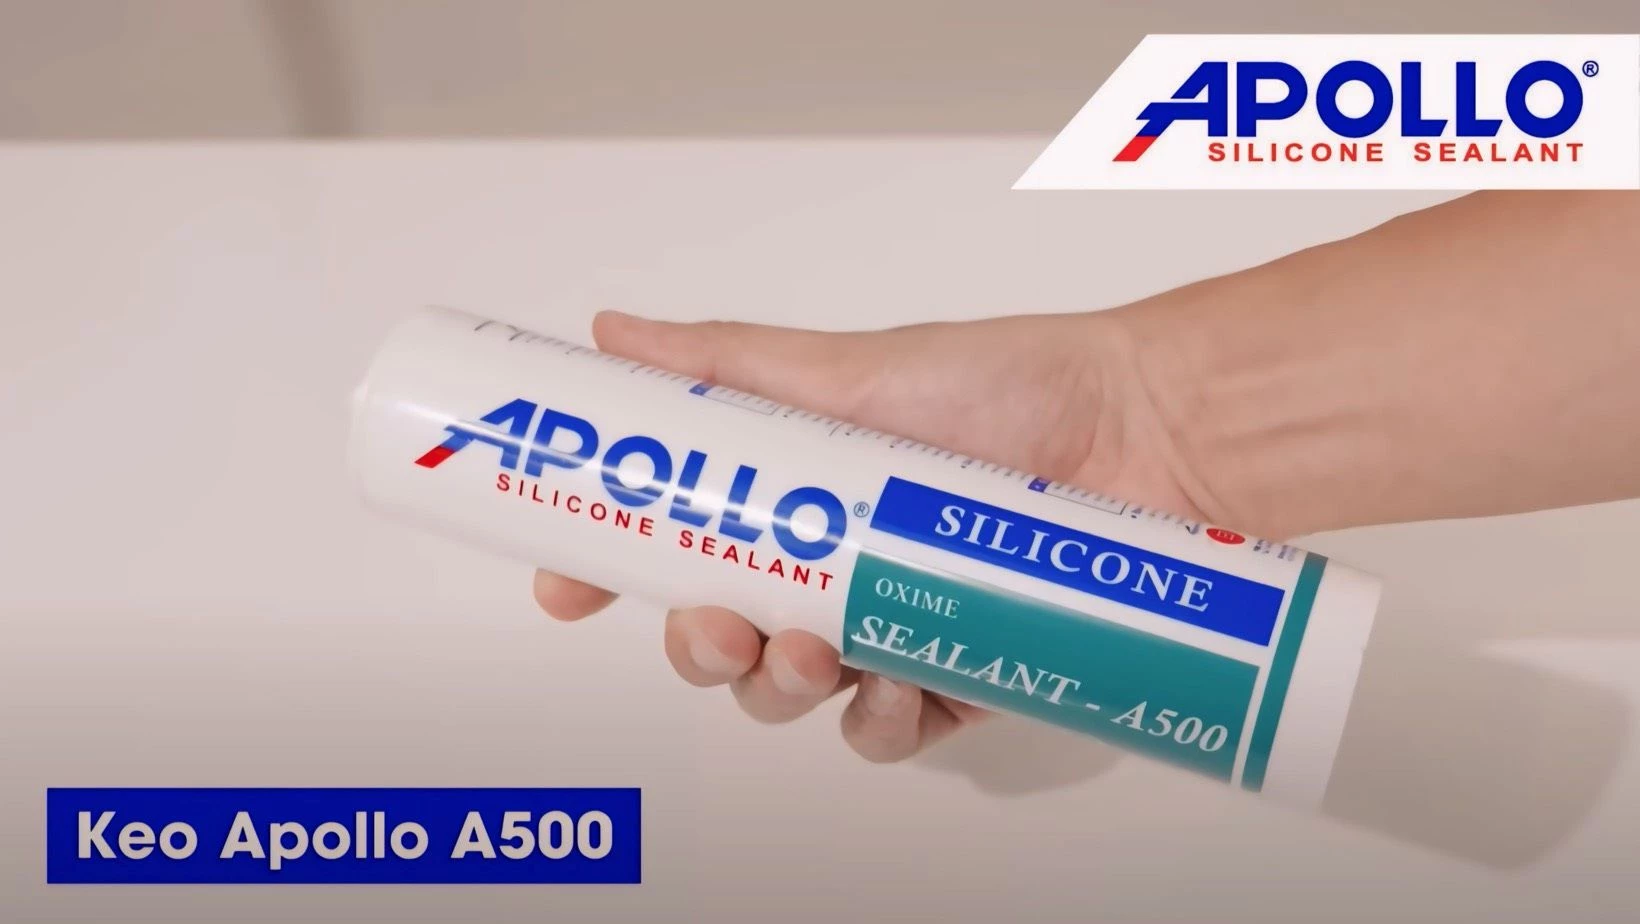 Keo silicone chịu nhiệt chịu nước Apollo A500 thích hợp với nhiều ứng dụng ở các môi trường khác nhau